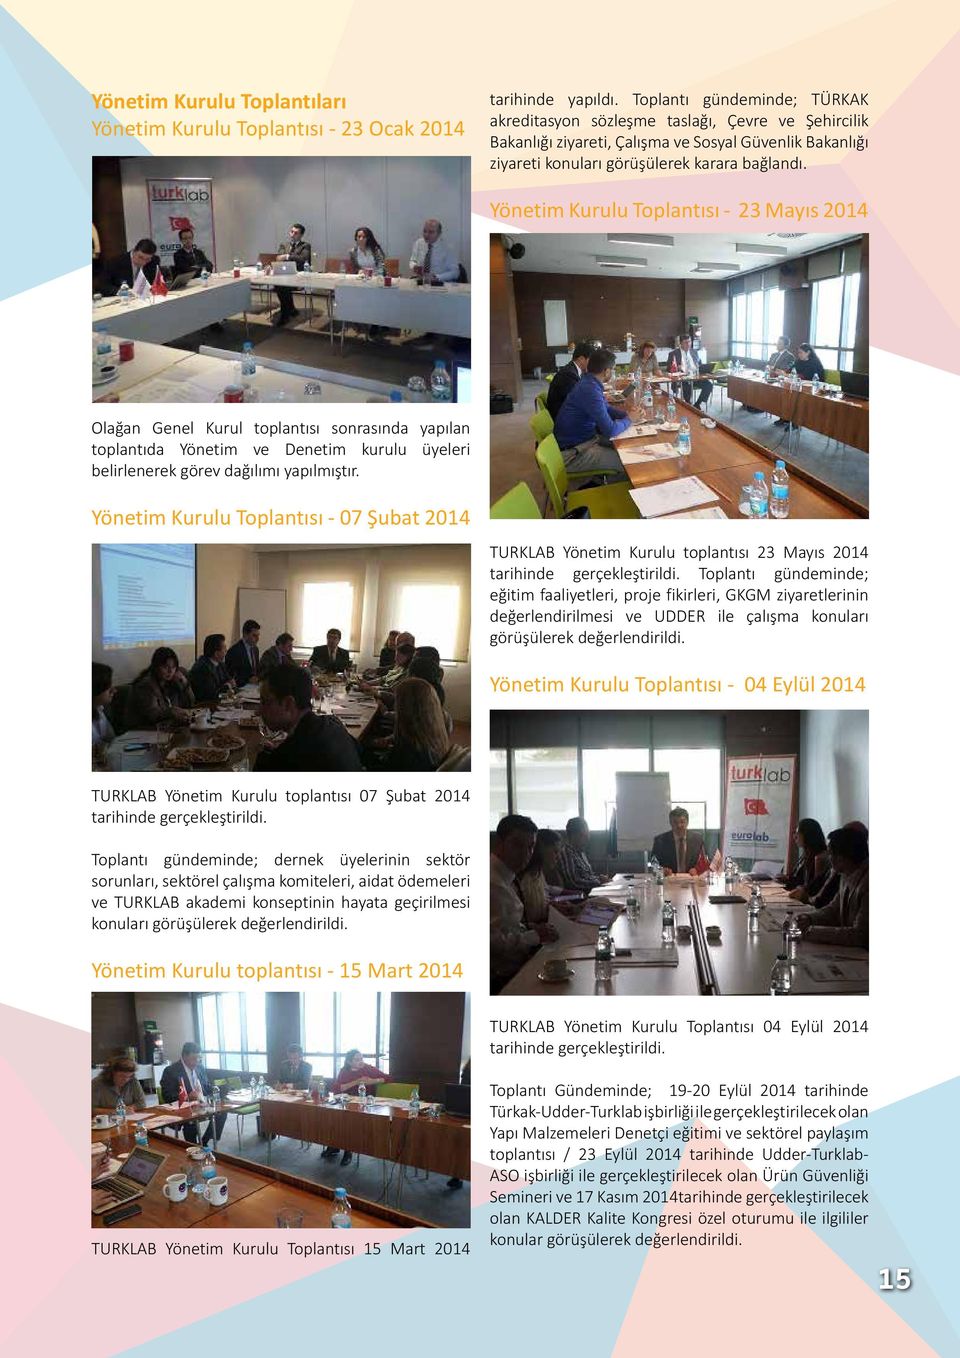 Yönetim Kurulu Toplantısı - 23 Mayıs 2014 Olağan Genel Kurul toplantısı sonrasında yapılan toplantıda Yönetim ve Denetim kurulu üyeleri belirlenerek görev dağılımı yapılmıştır.